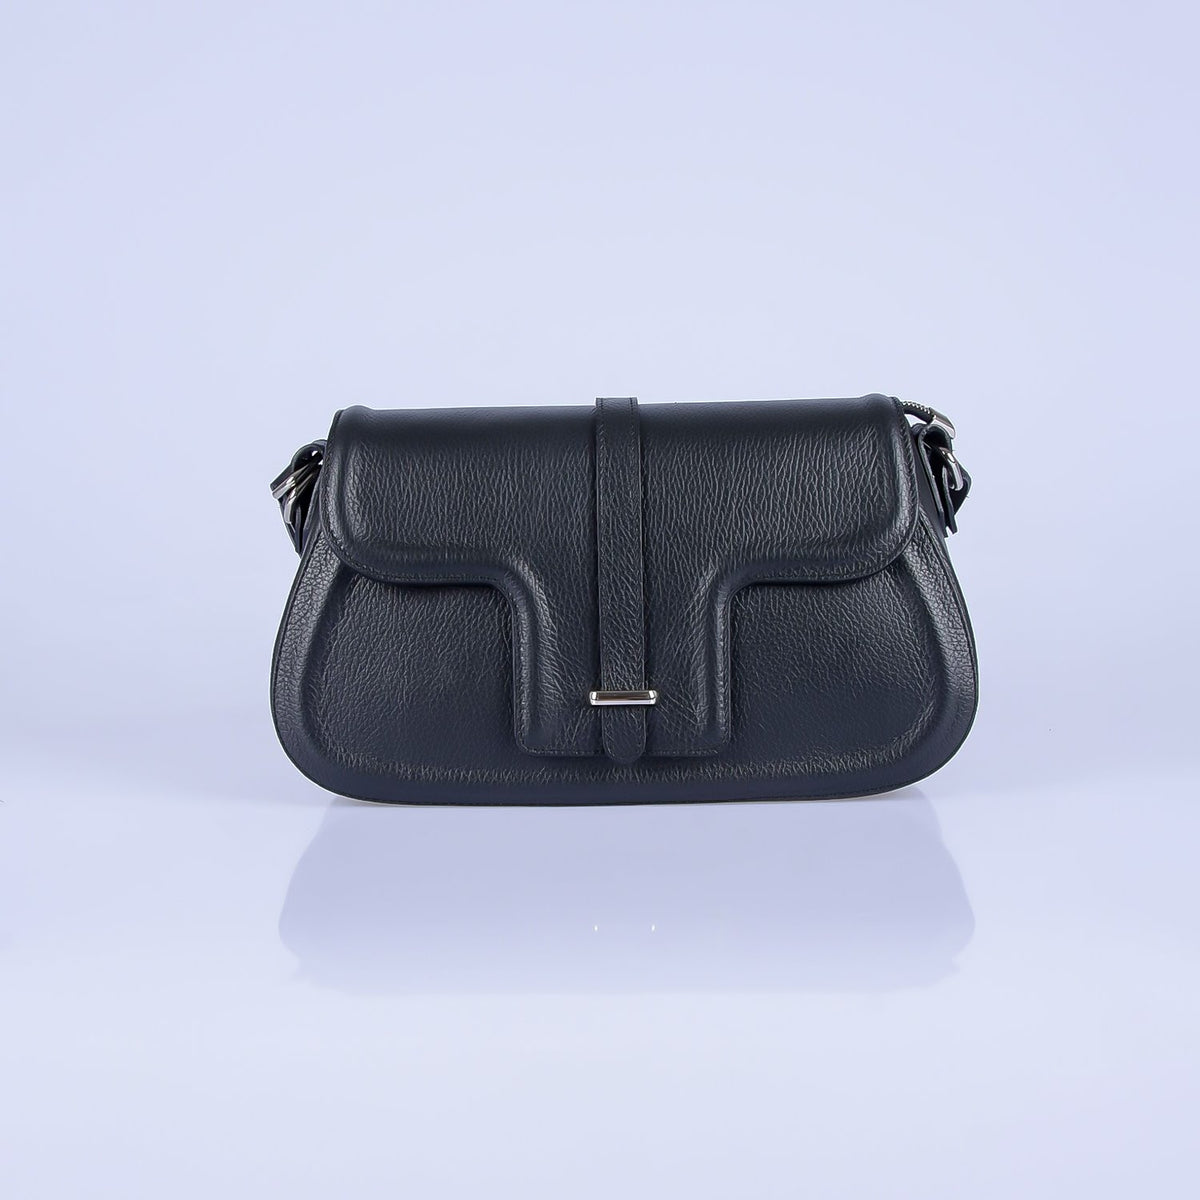 Tumbled genuine leather handbag art. 112350